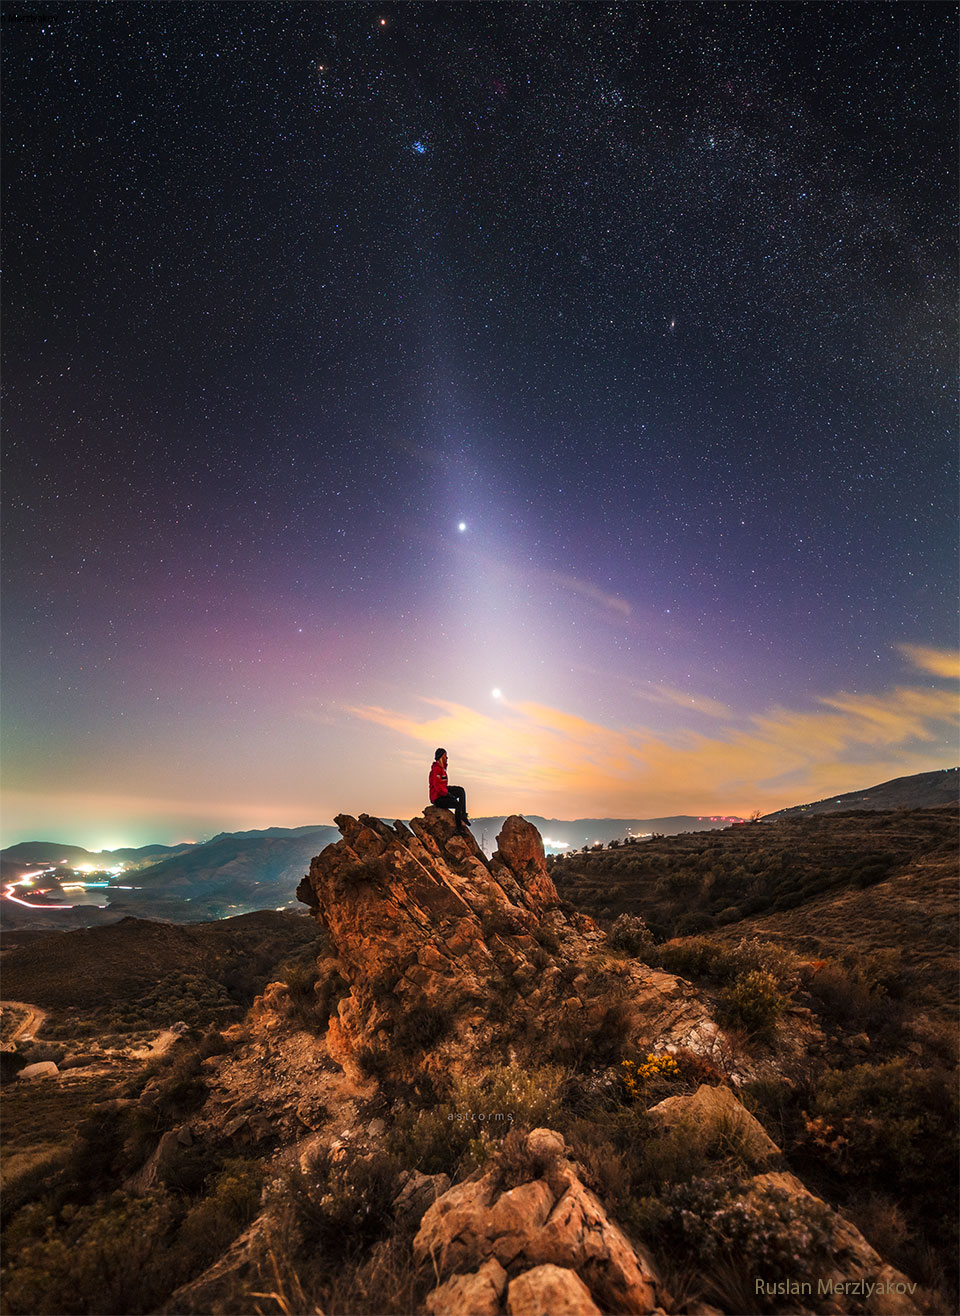 MAuf einem Felsen sitzt eine Person unter einem ungewöhnlichen Himmel. Am Himmel leuchtet ein helles, diffuses Band, das sich bis zum Horizont erstreckt und durch zwei helle Punkte, Jupiter und Venus, verläuft. Die Plejaden Sternhaufen ist über ihnen zu sehen.